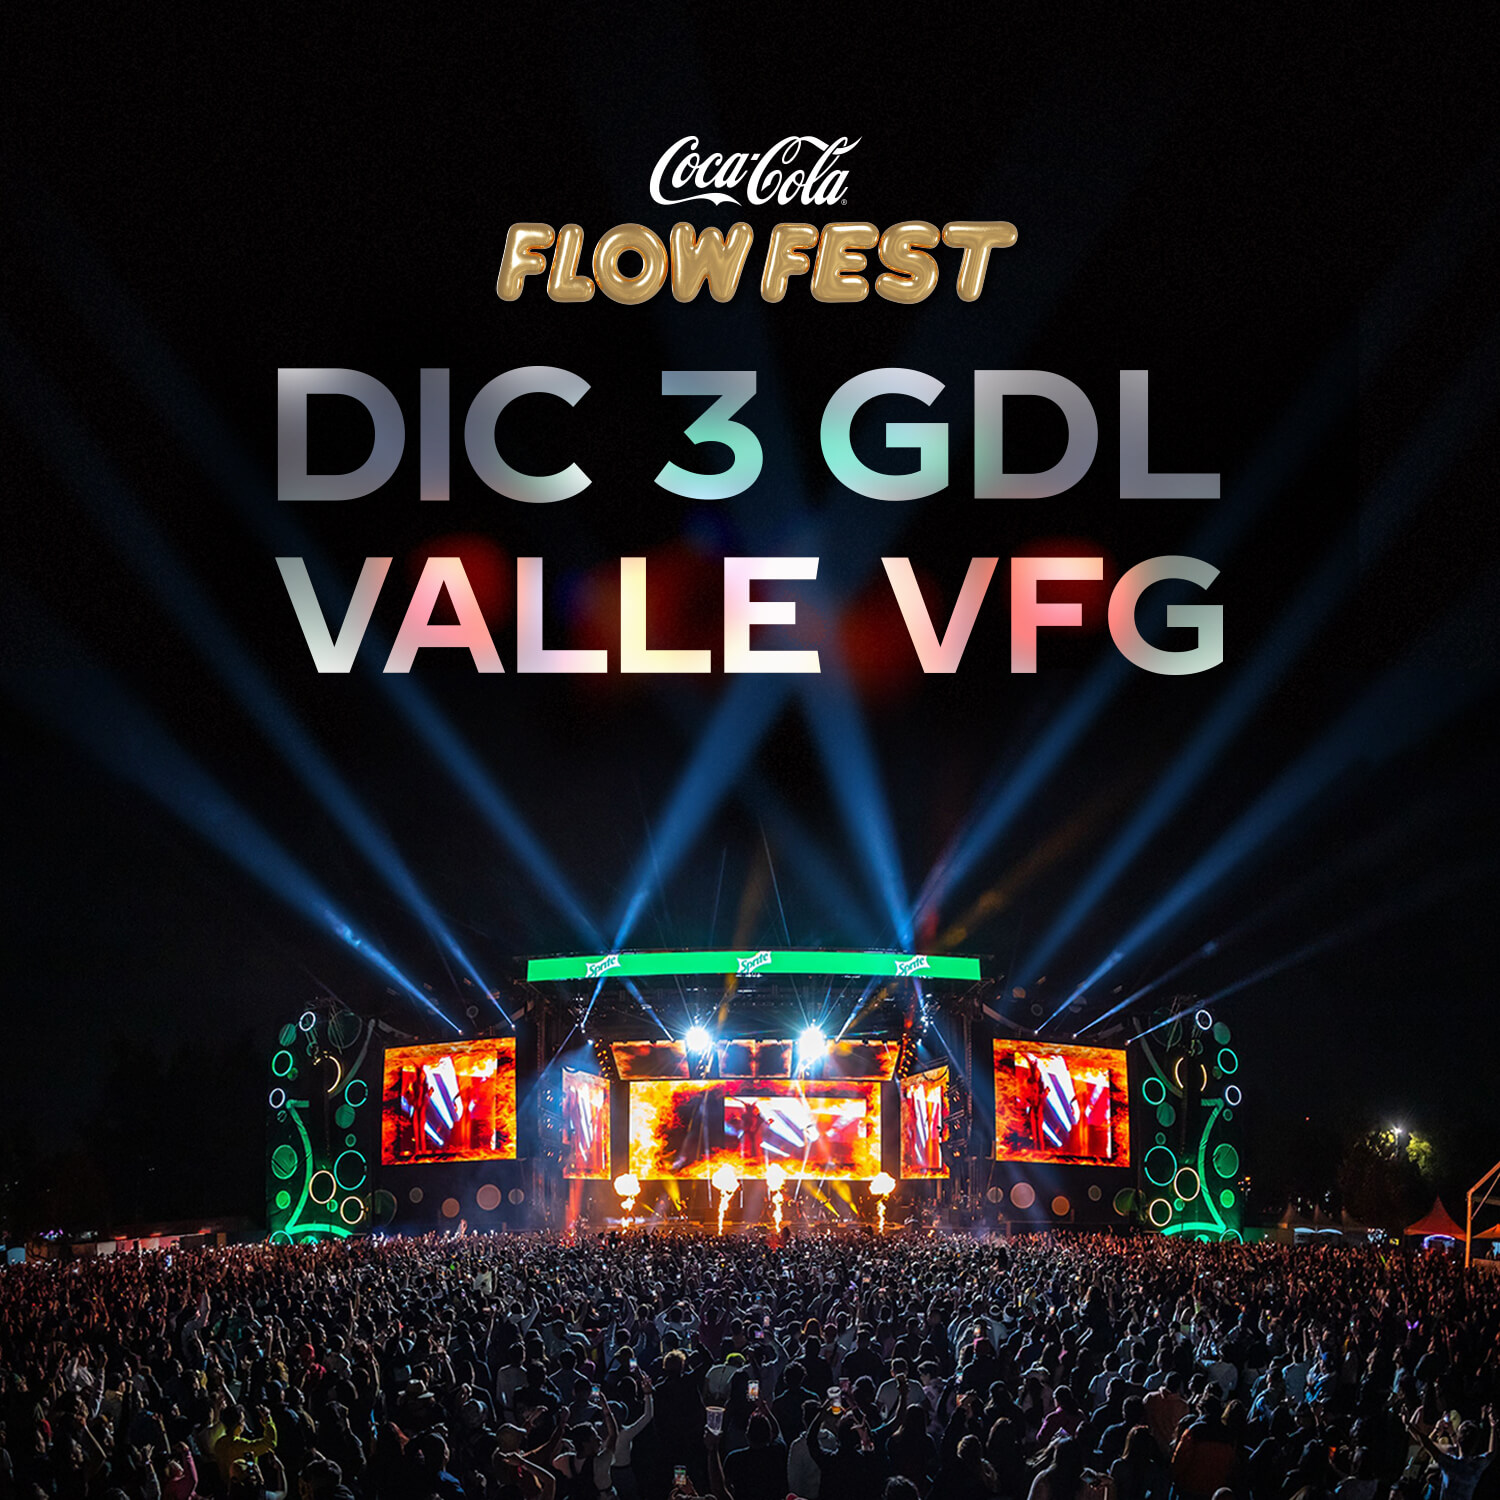 Coca-Cola Flow Fest, 3 diciembre Valle VFG